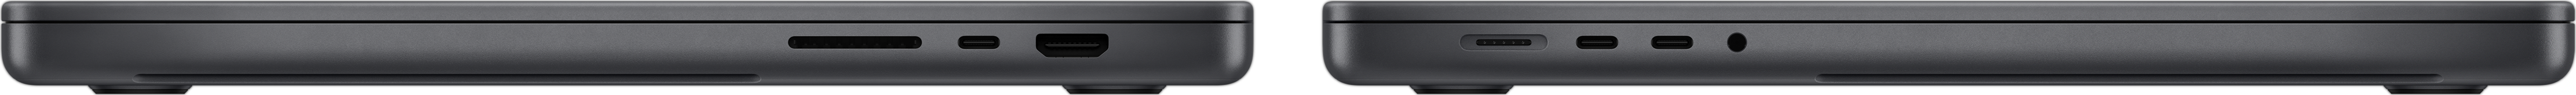 Vista lateral de una MacBook Pro que muestra una ranura para tarjeta SDXC, tres puertos Thunderbolt 4, un puerto HDMI, un puerto de carga MagSafe 3 y una entrada para audífonos.